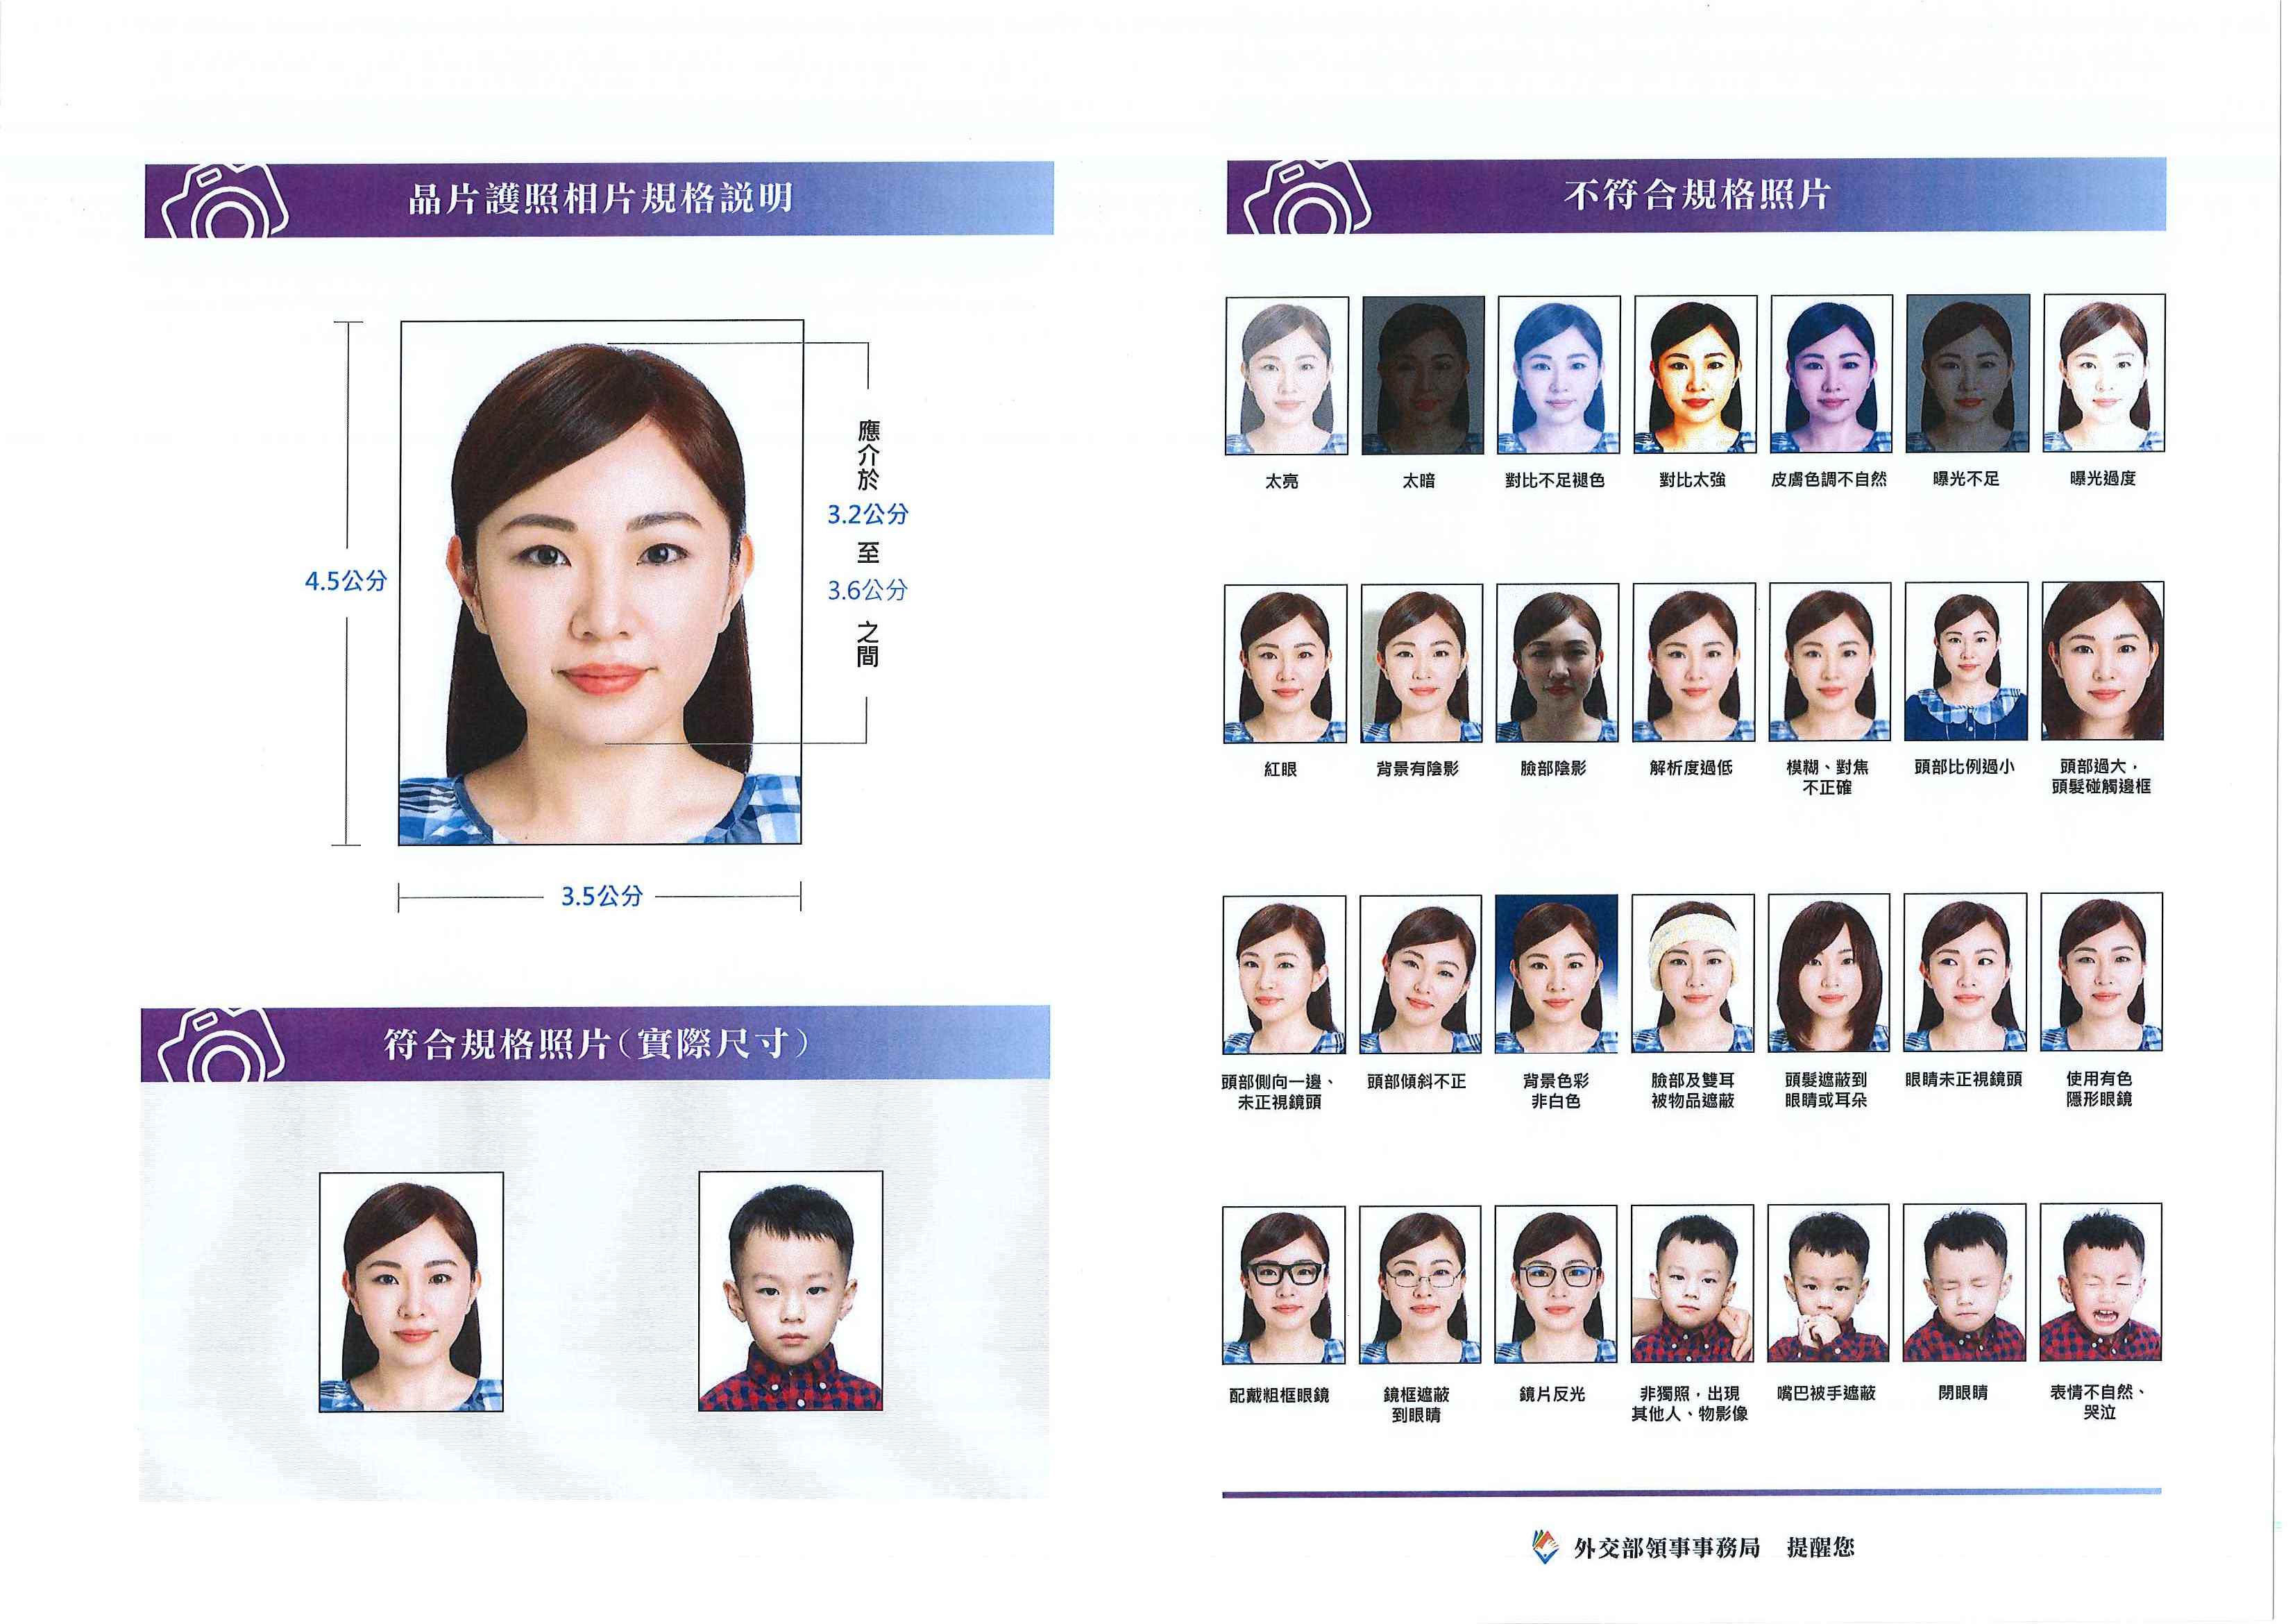 晶片護照規格說明(2吋、近六個月內、彩色半身、正面、脫帽、五官清析、白色背景)